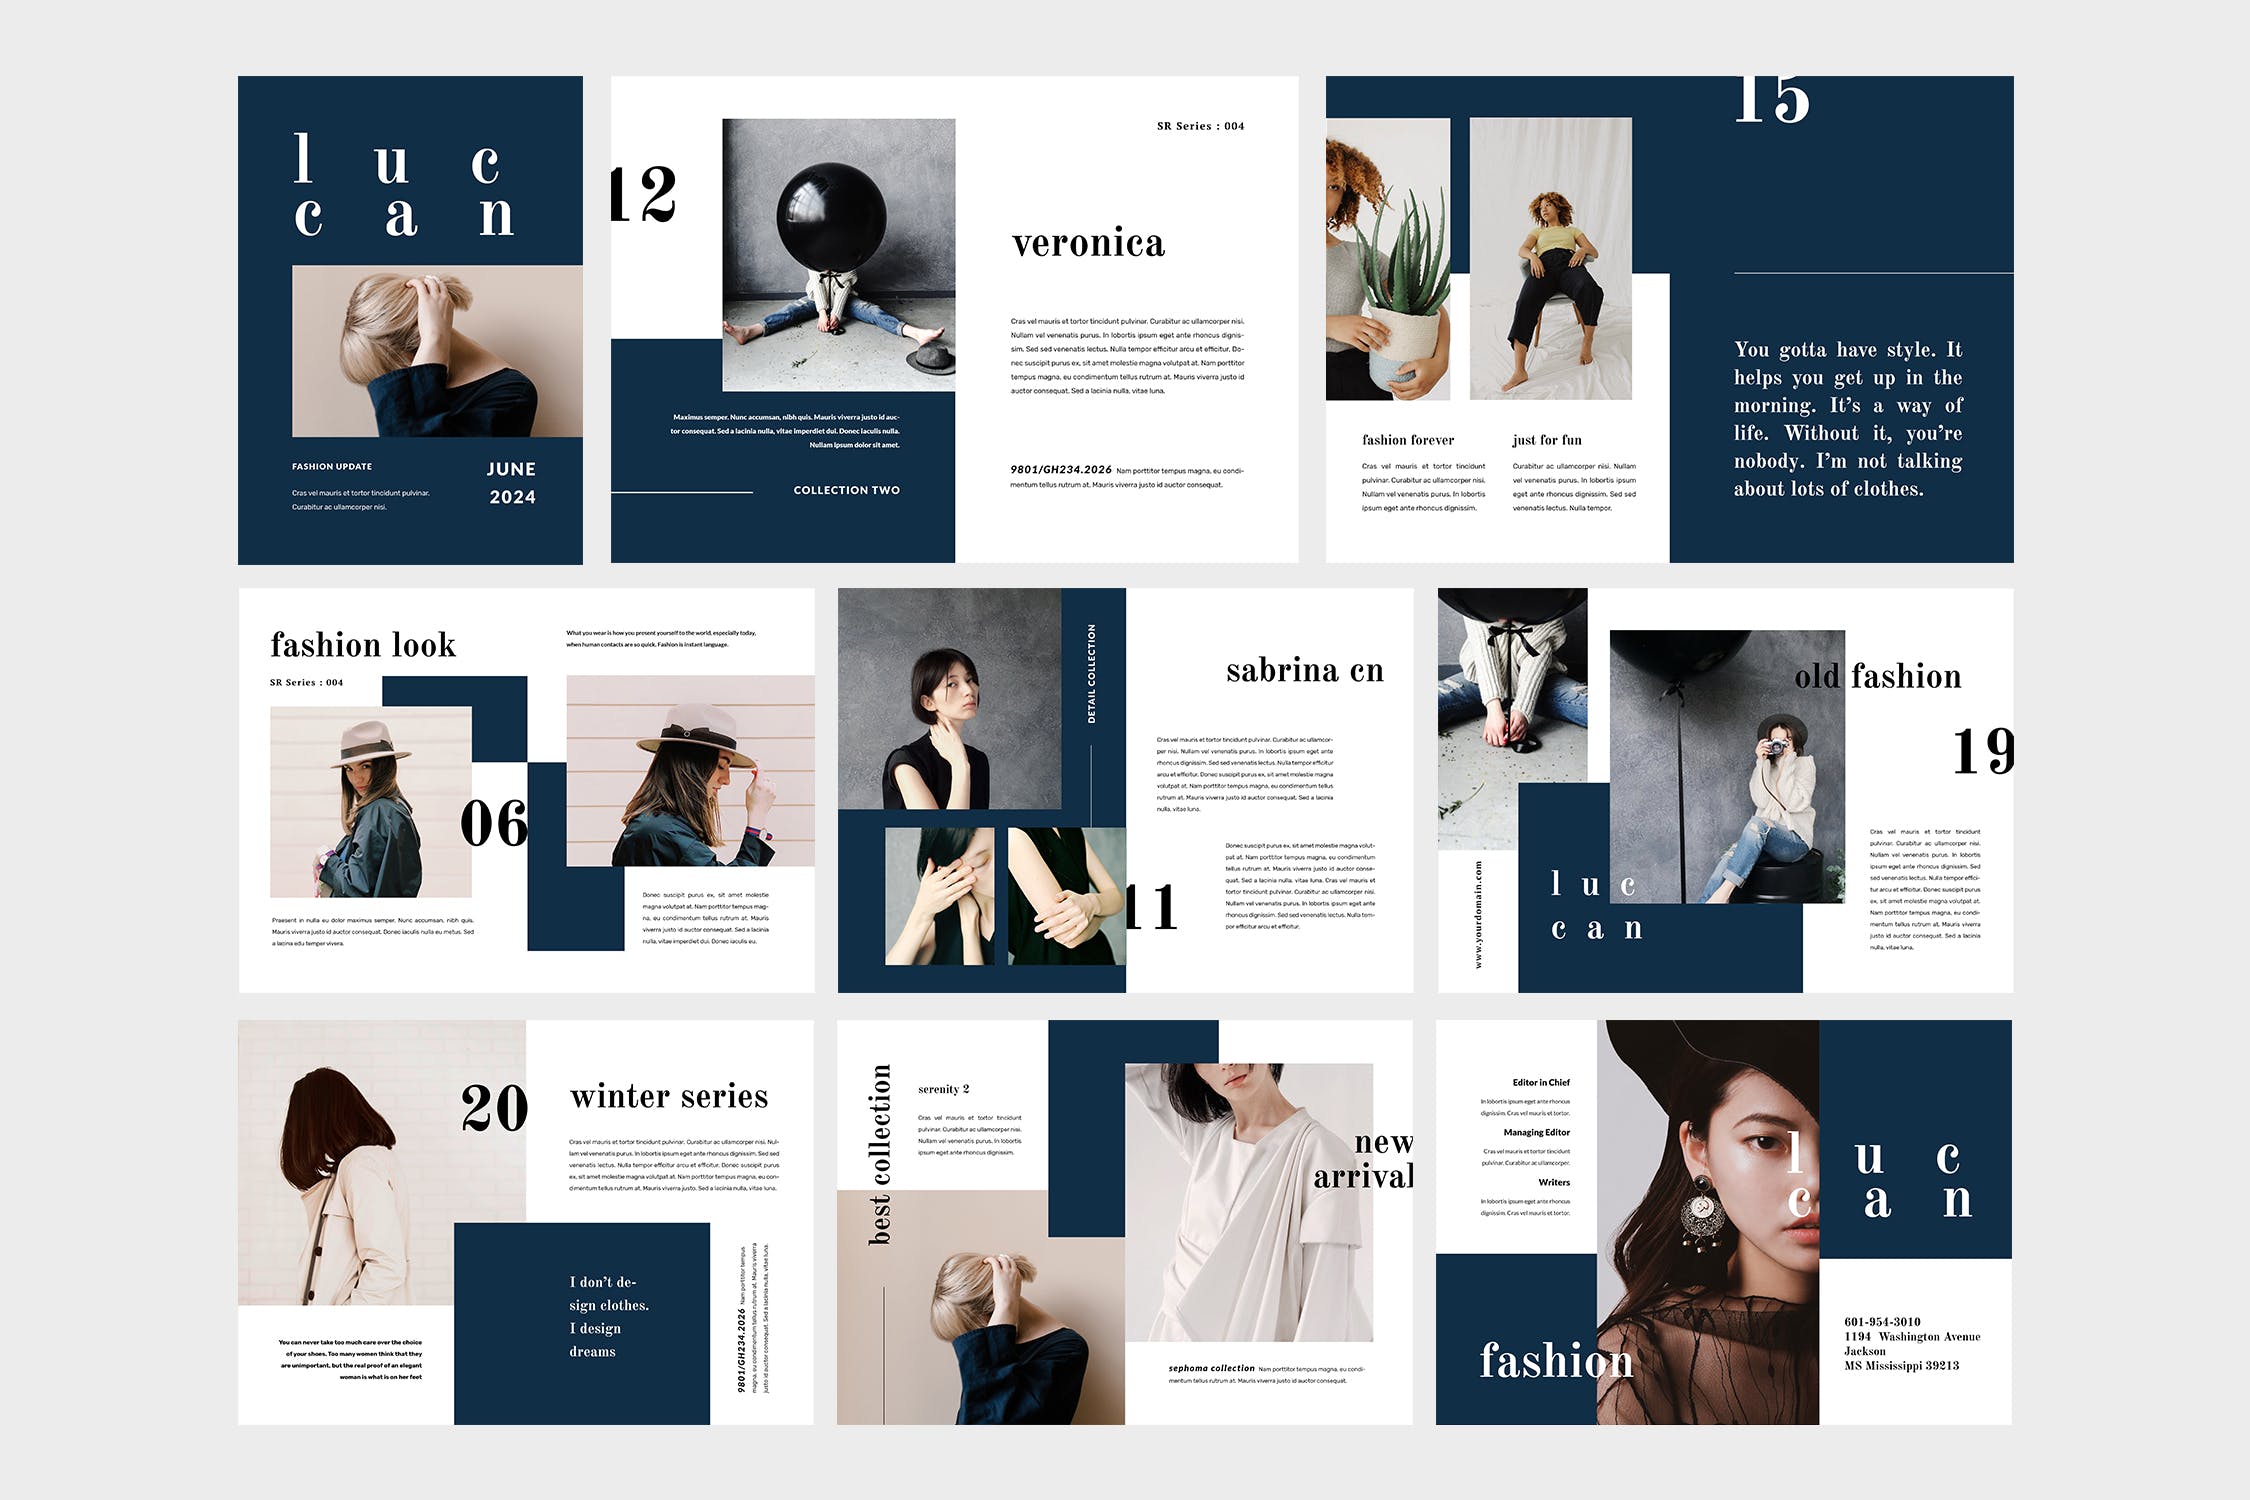 高端女性服装品牌产品16图库精选目录设计模板 Luccan Fashion Lookbook Catalogue插图(4)